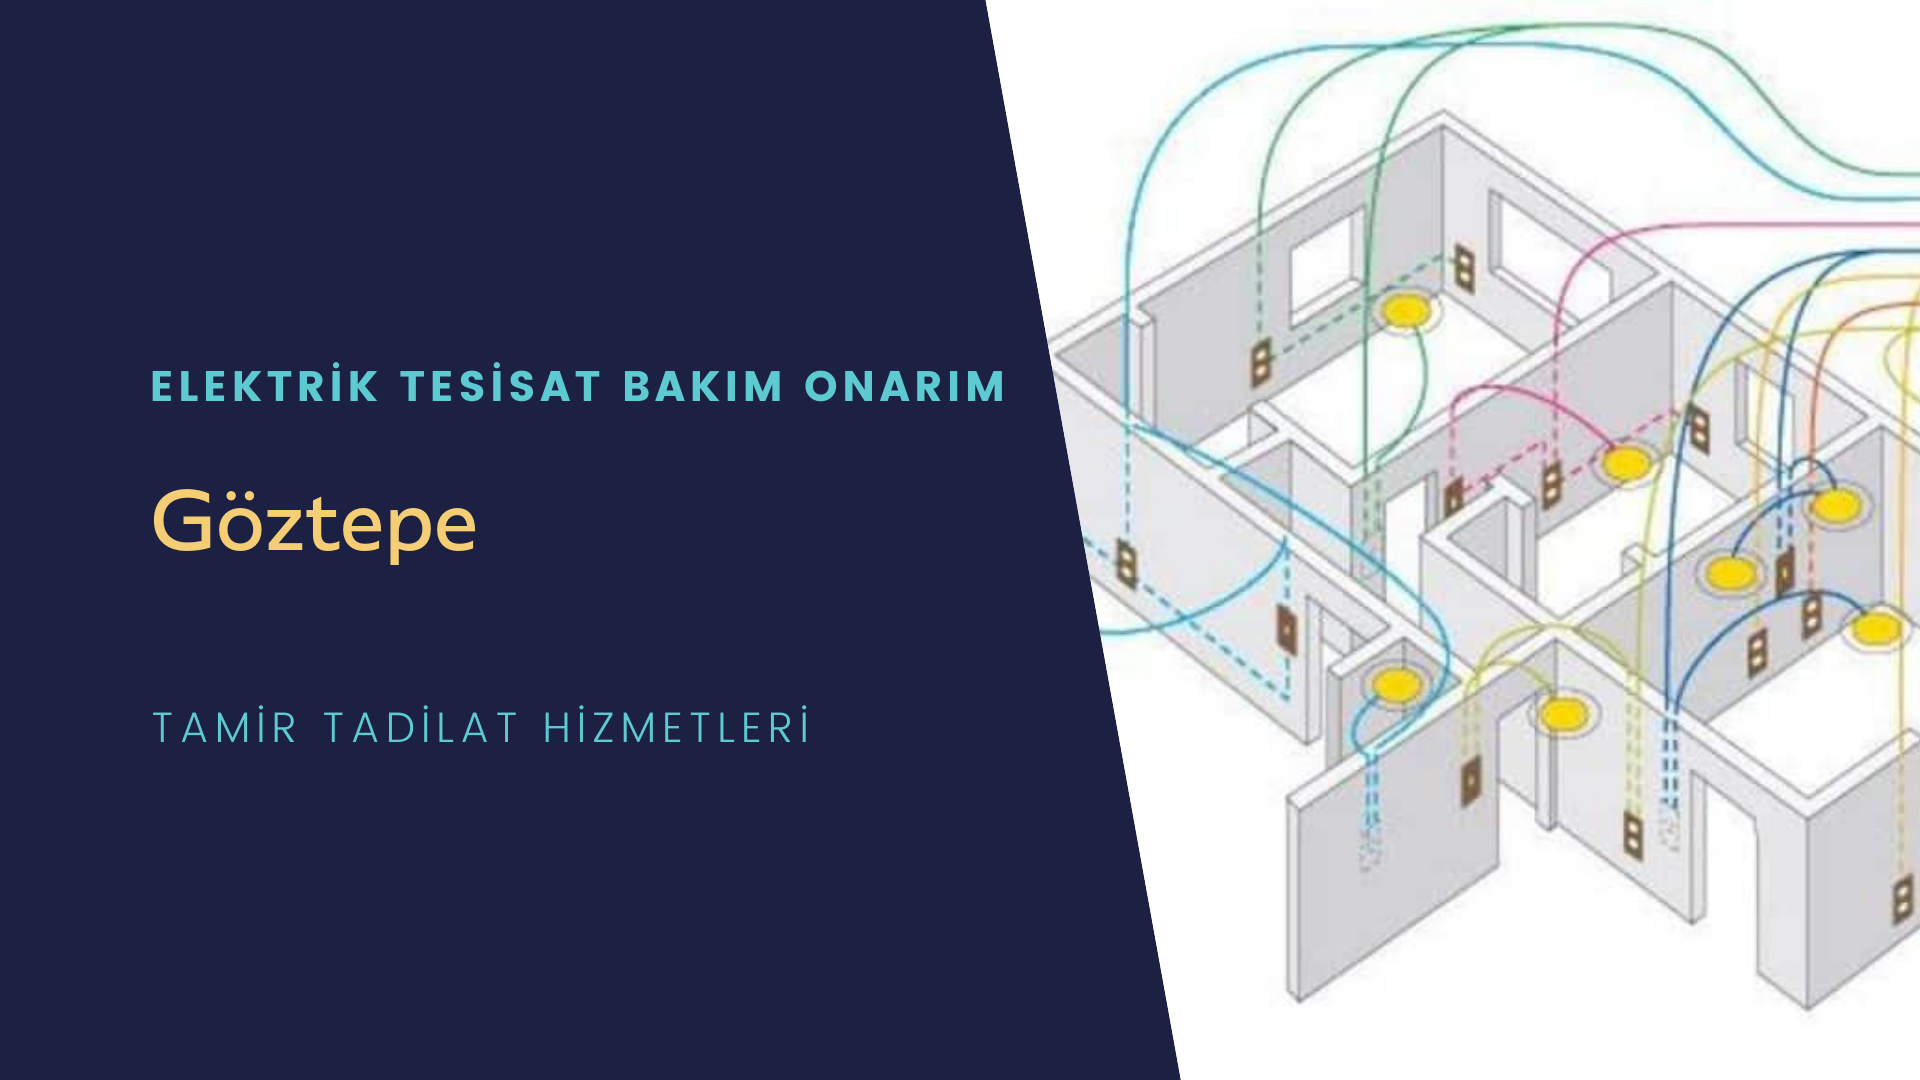 Göztepe'de elektrik tesisatı ustalarımı arıyorsunuz doğru adrestenizi Göztepe elektrik tesisatı ustalarımız 7/24 sizlere hizmet vermekten mutluluk duyar.